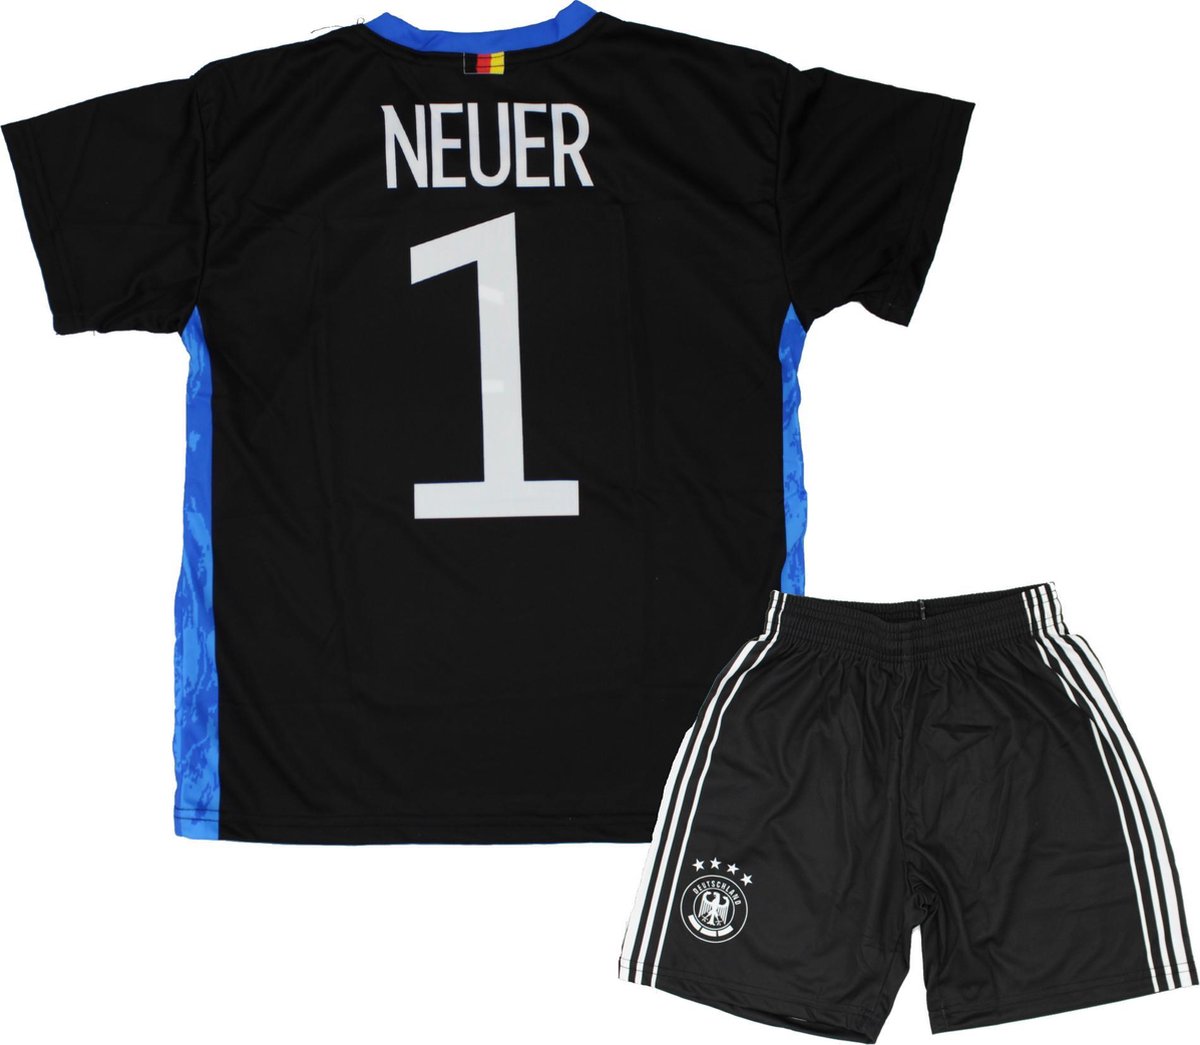 Neuer Keepers Tenue Voetbal Shirt + broekje set - Duitsland EK/WK voetbaltenue - Maat 116